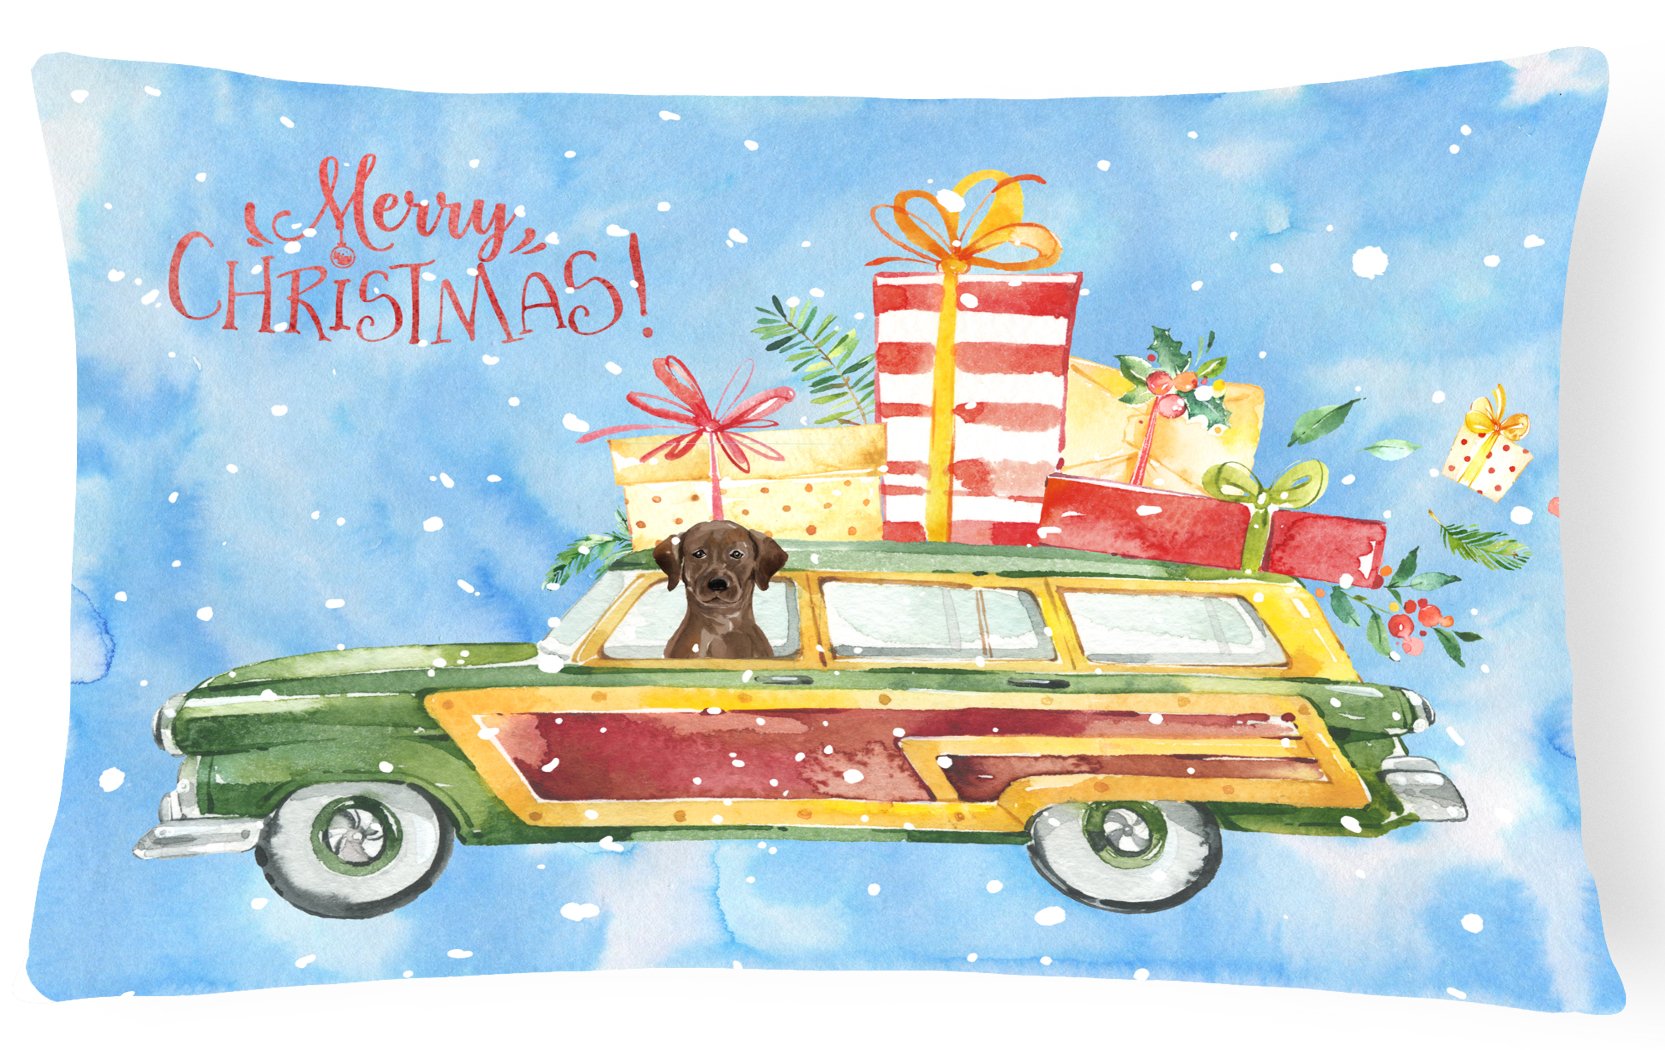 Merry Christmas Chocolate Labrador Retriever Canvas Fabric Decorative Pillow CK2437PW1216 by Caroline's Treasures